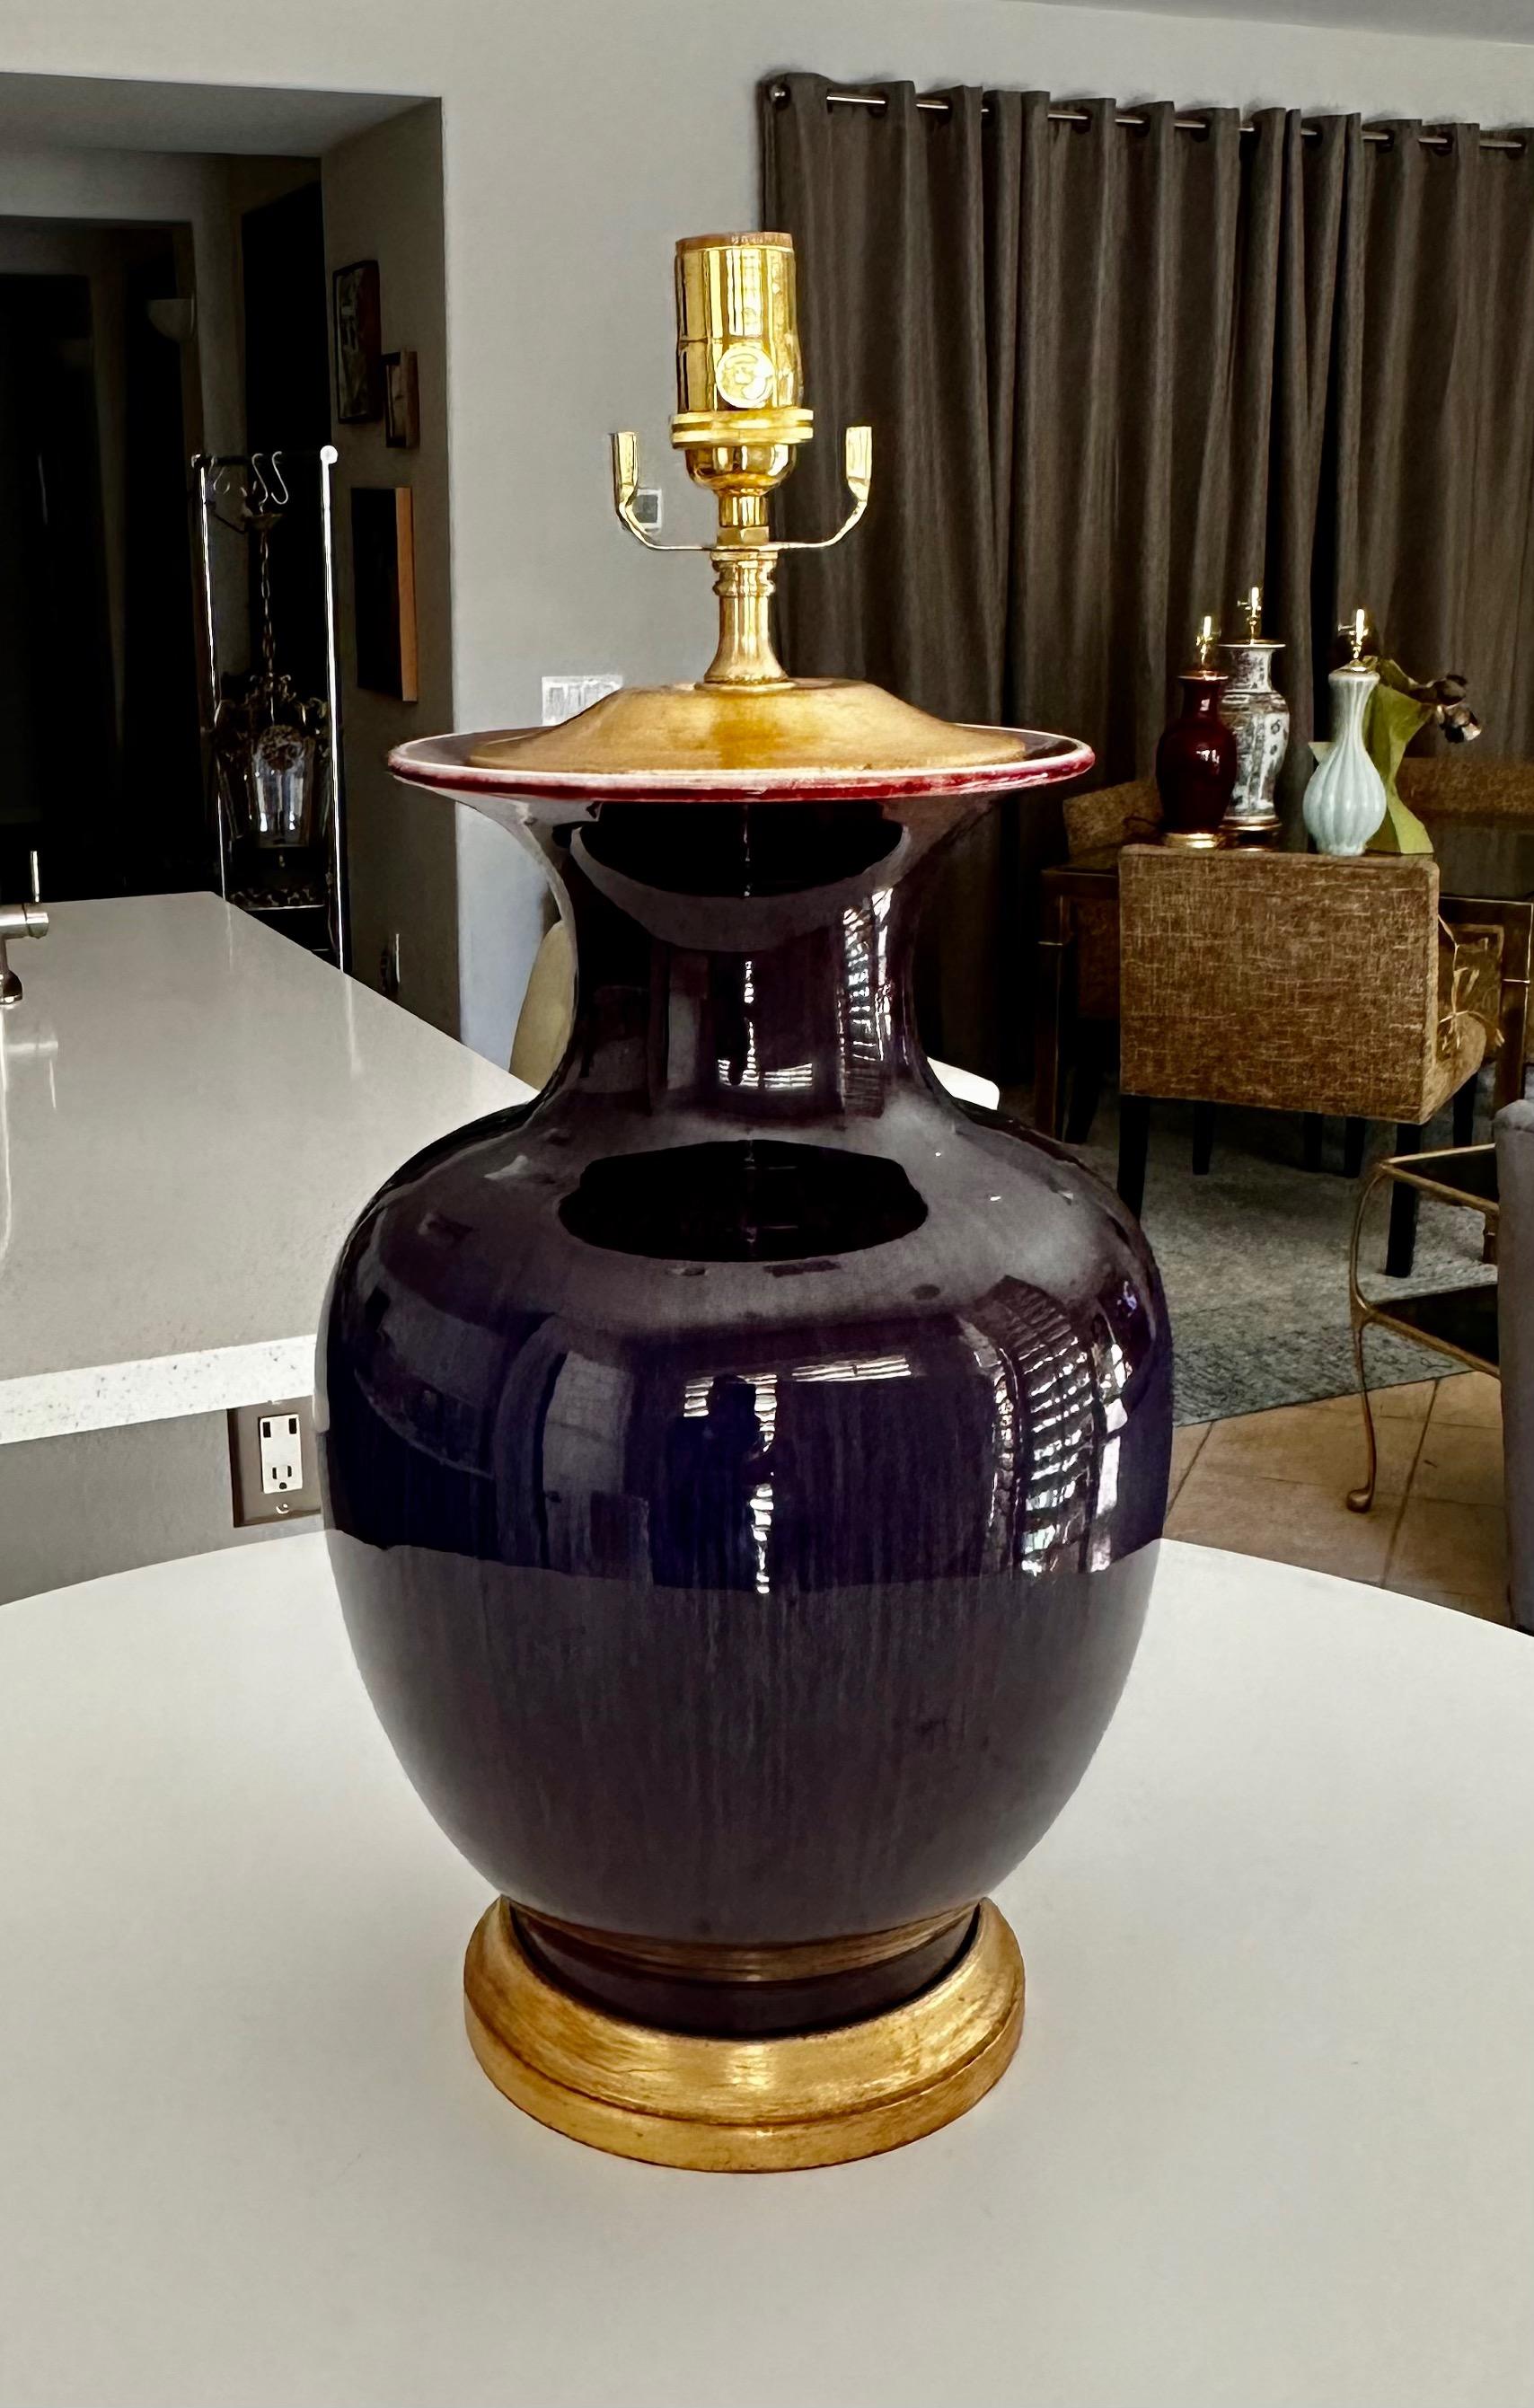 Vase asiatique en porcelaine Sang de Bœuf monté sur un pied de lampe en bois tourné et doré. La coloration est globalement violacée avec des touches de rouge et des rayures verticales. Rééquipement avec une nouvelle prise à 3 voies en laiton et un